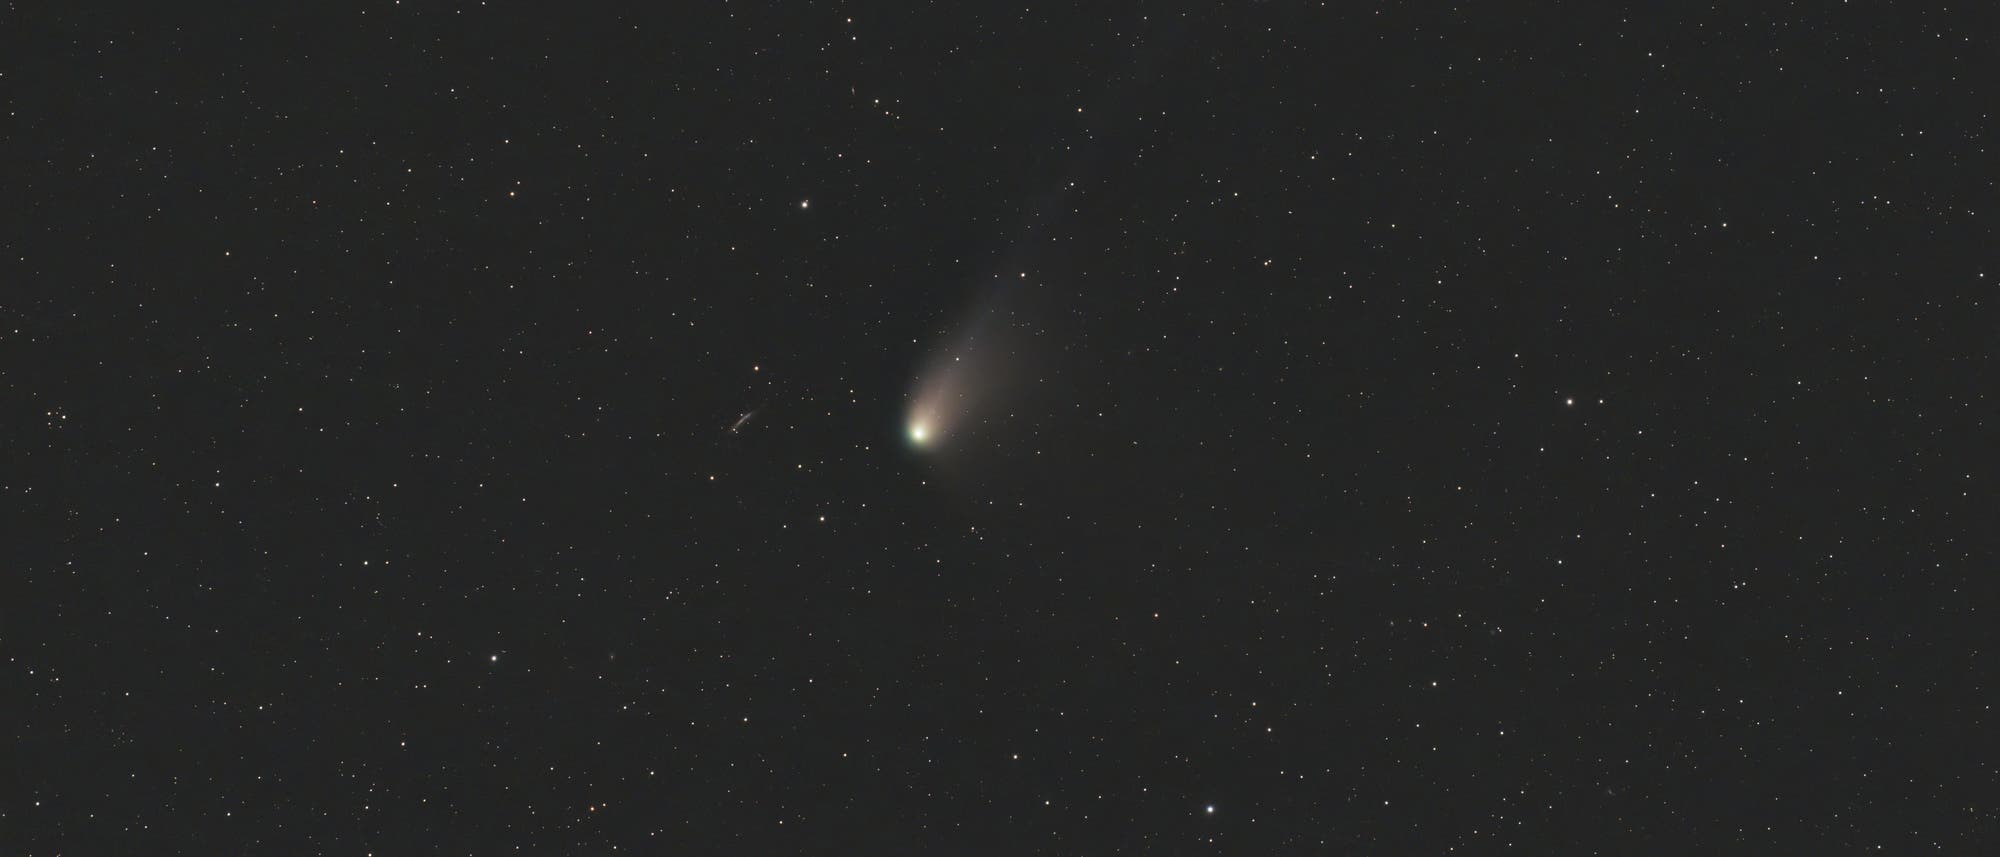 Komet Olbers bei NGC 3432 